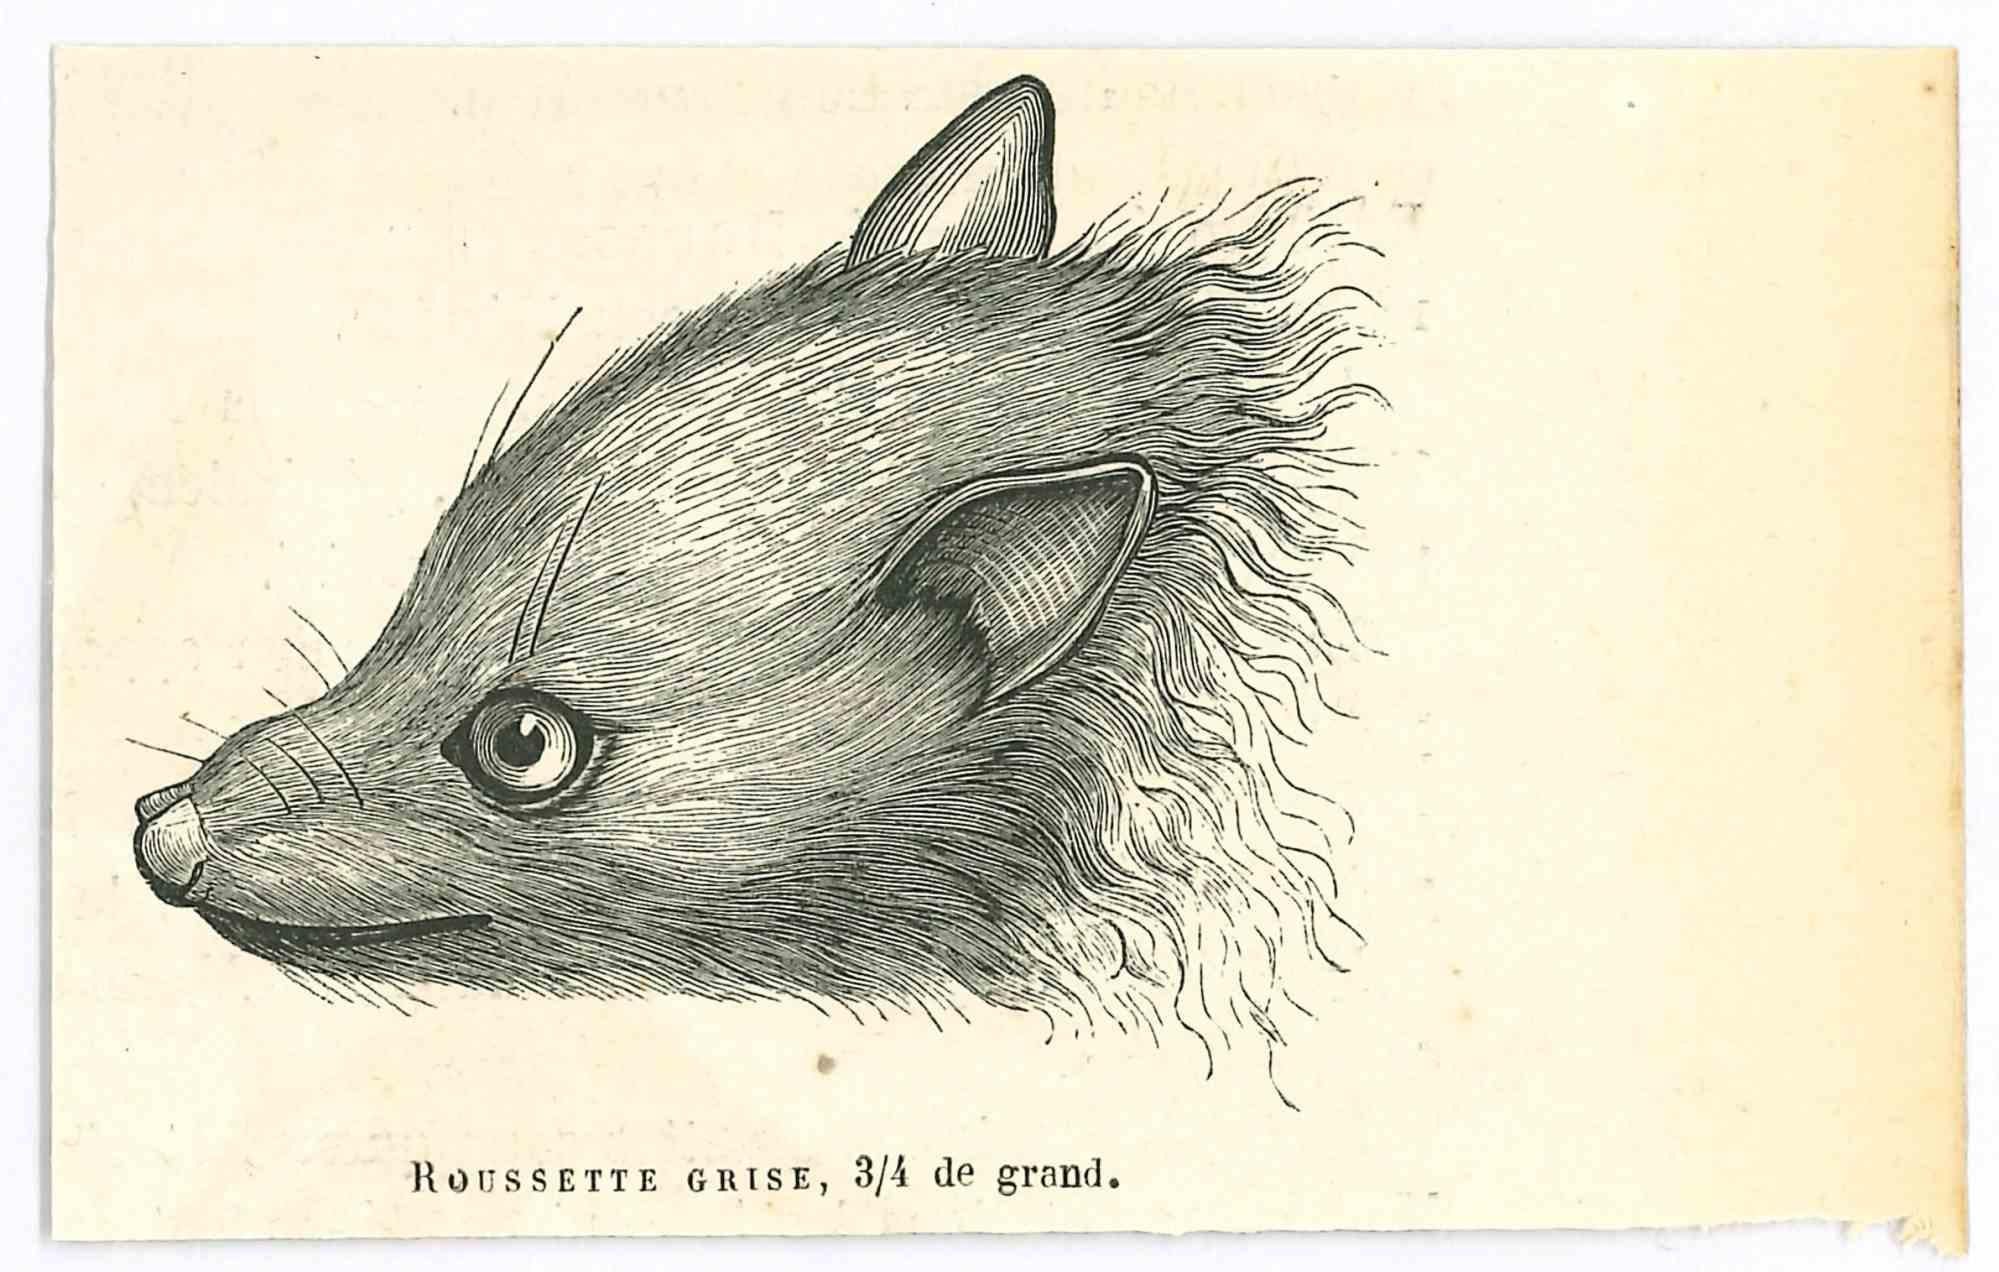 La souris - Lithographie de Paul Gervais - 1854